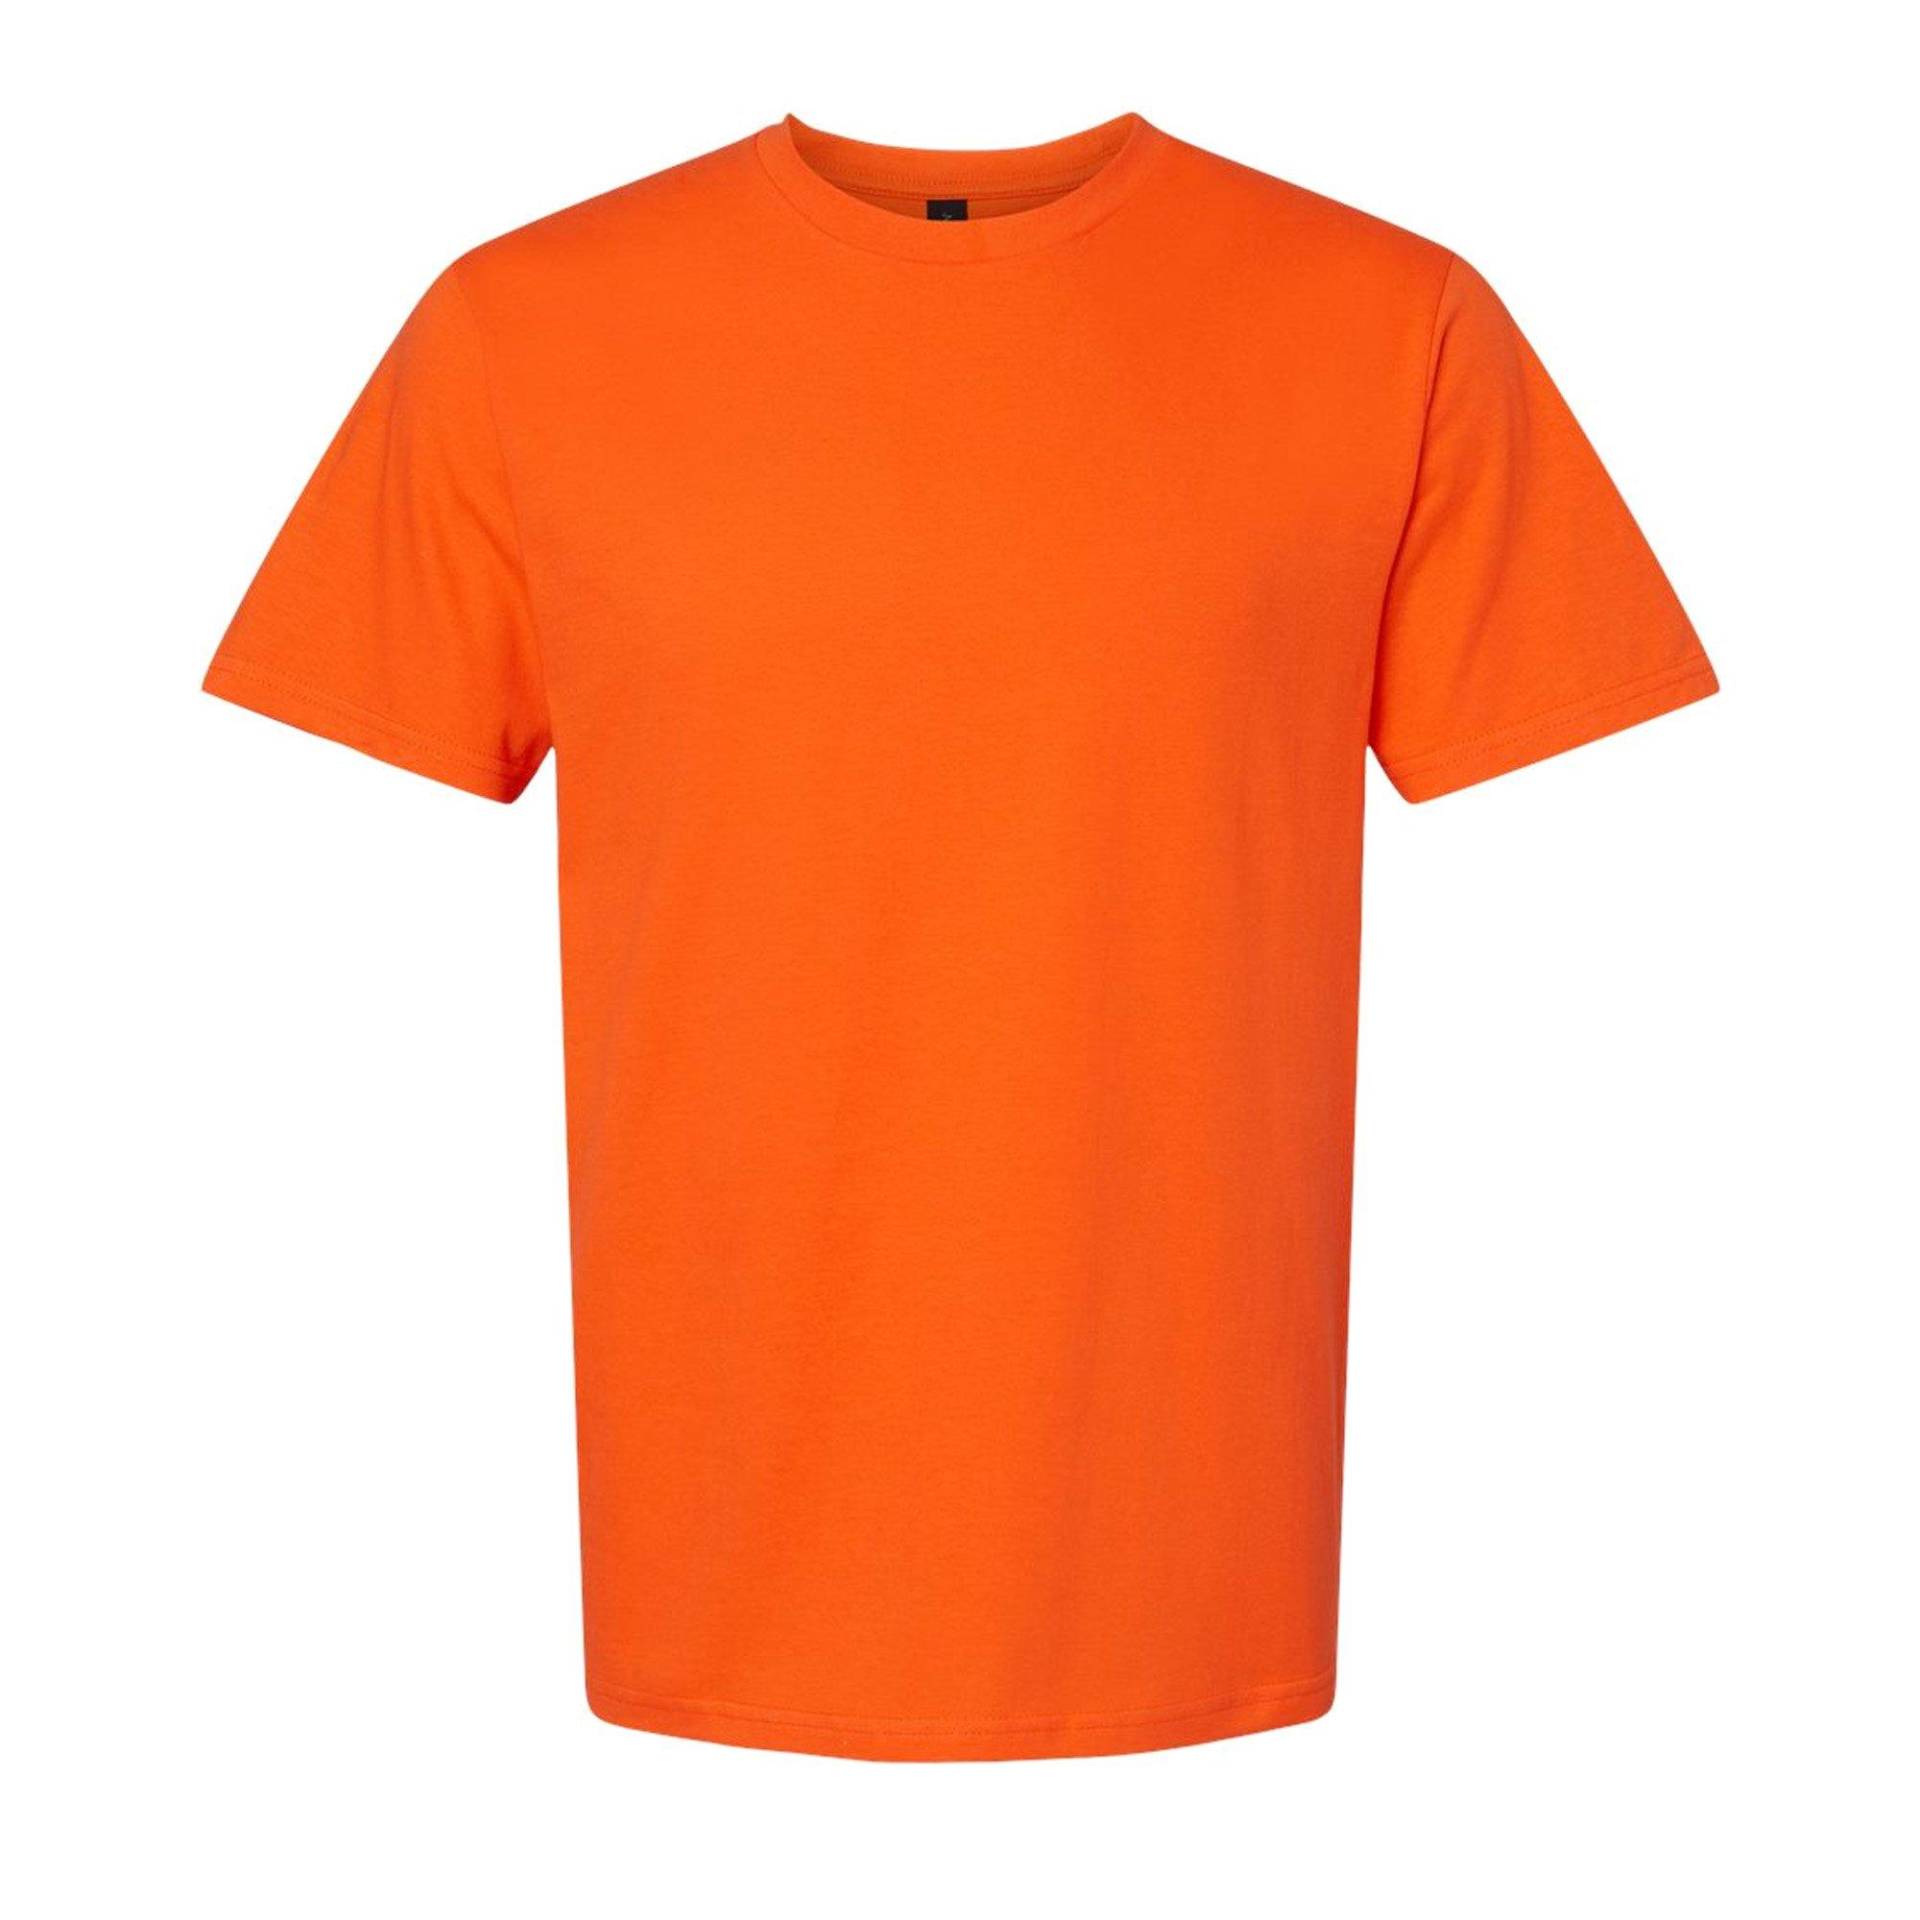 Softstyle Tshirt Damen Orange XL von Gildan